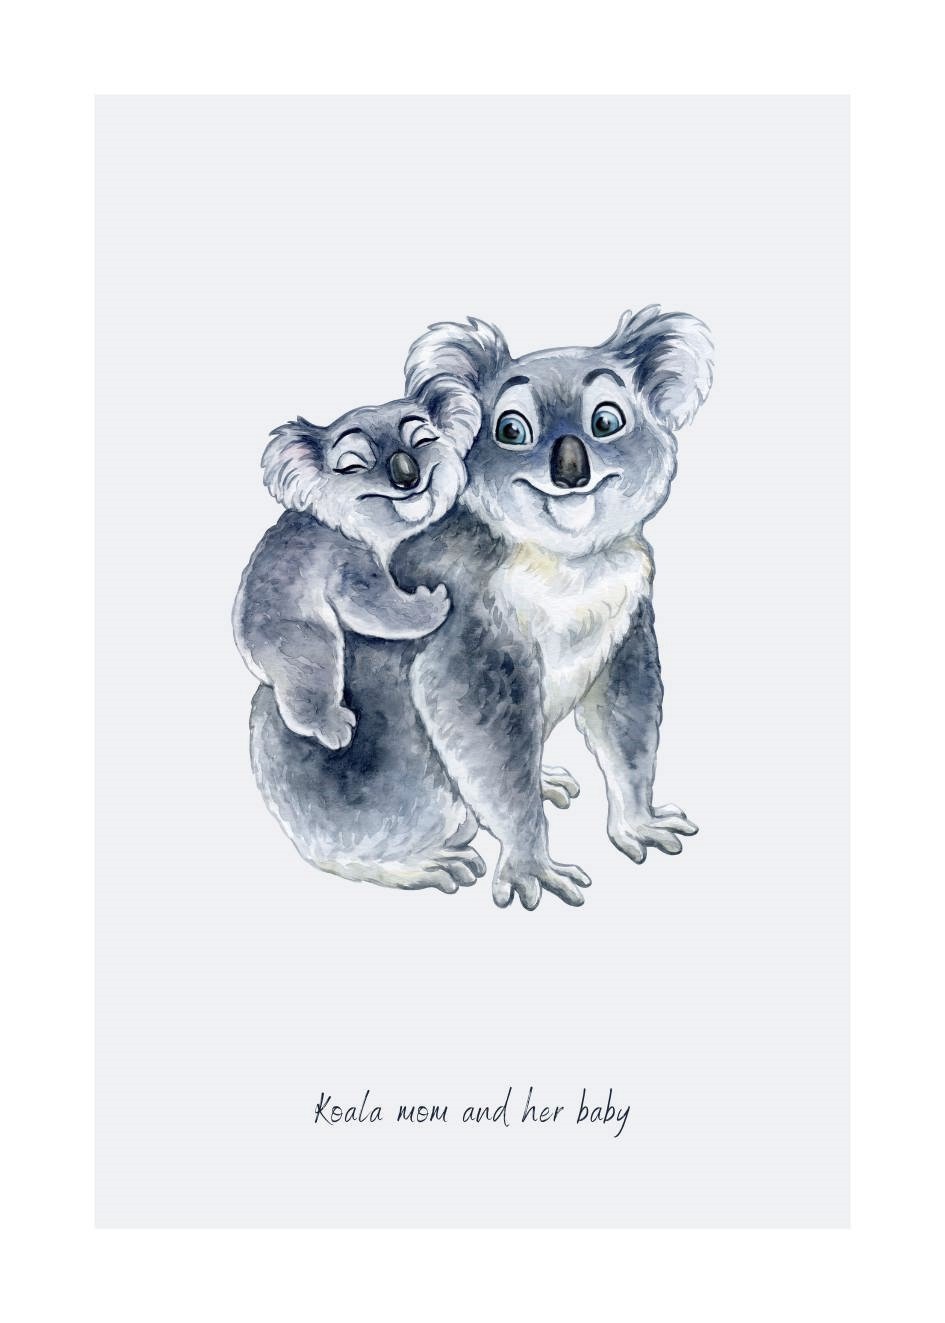 Koala Poster